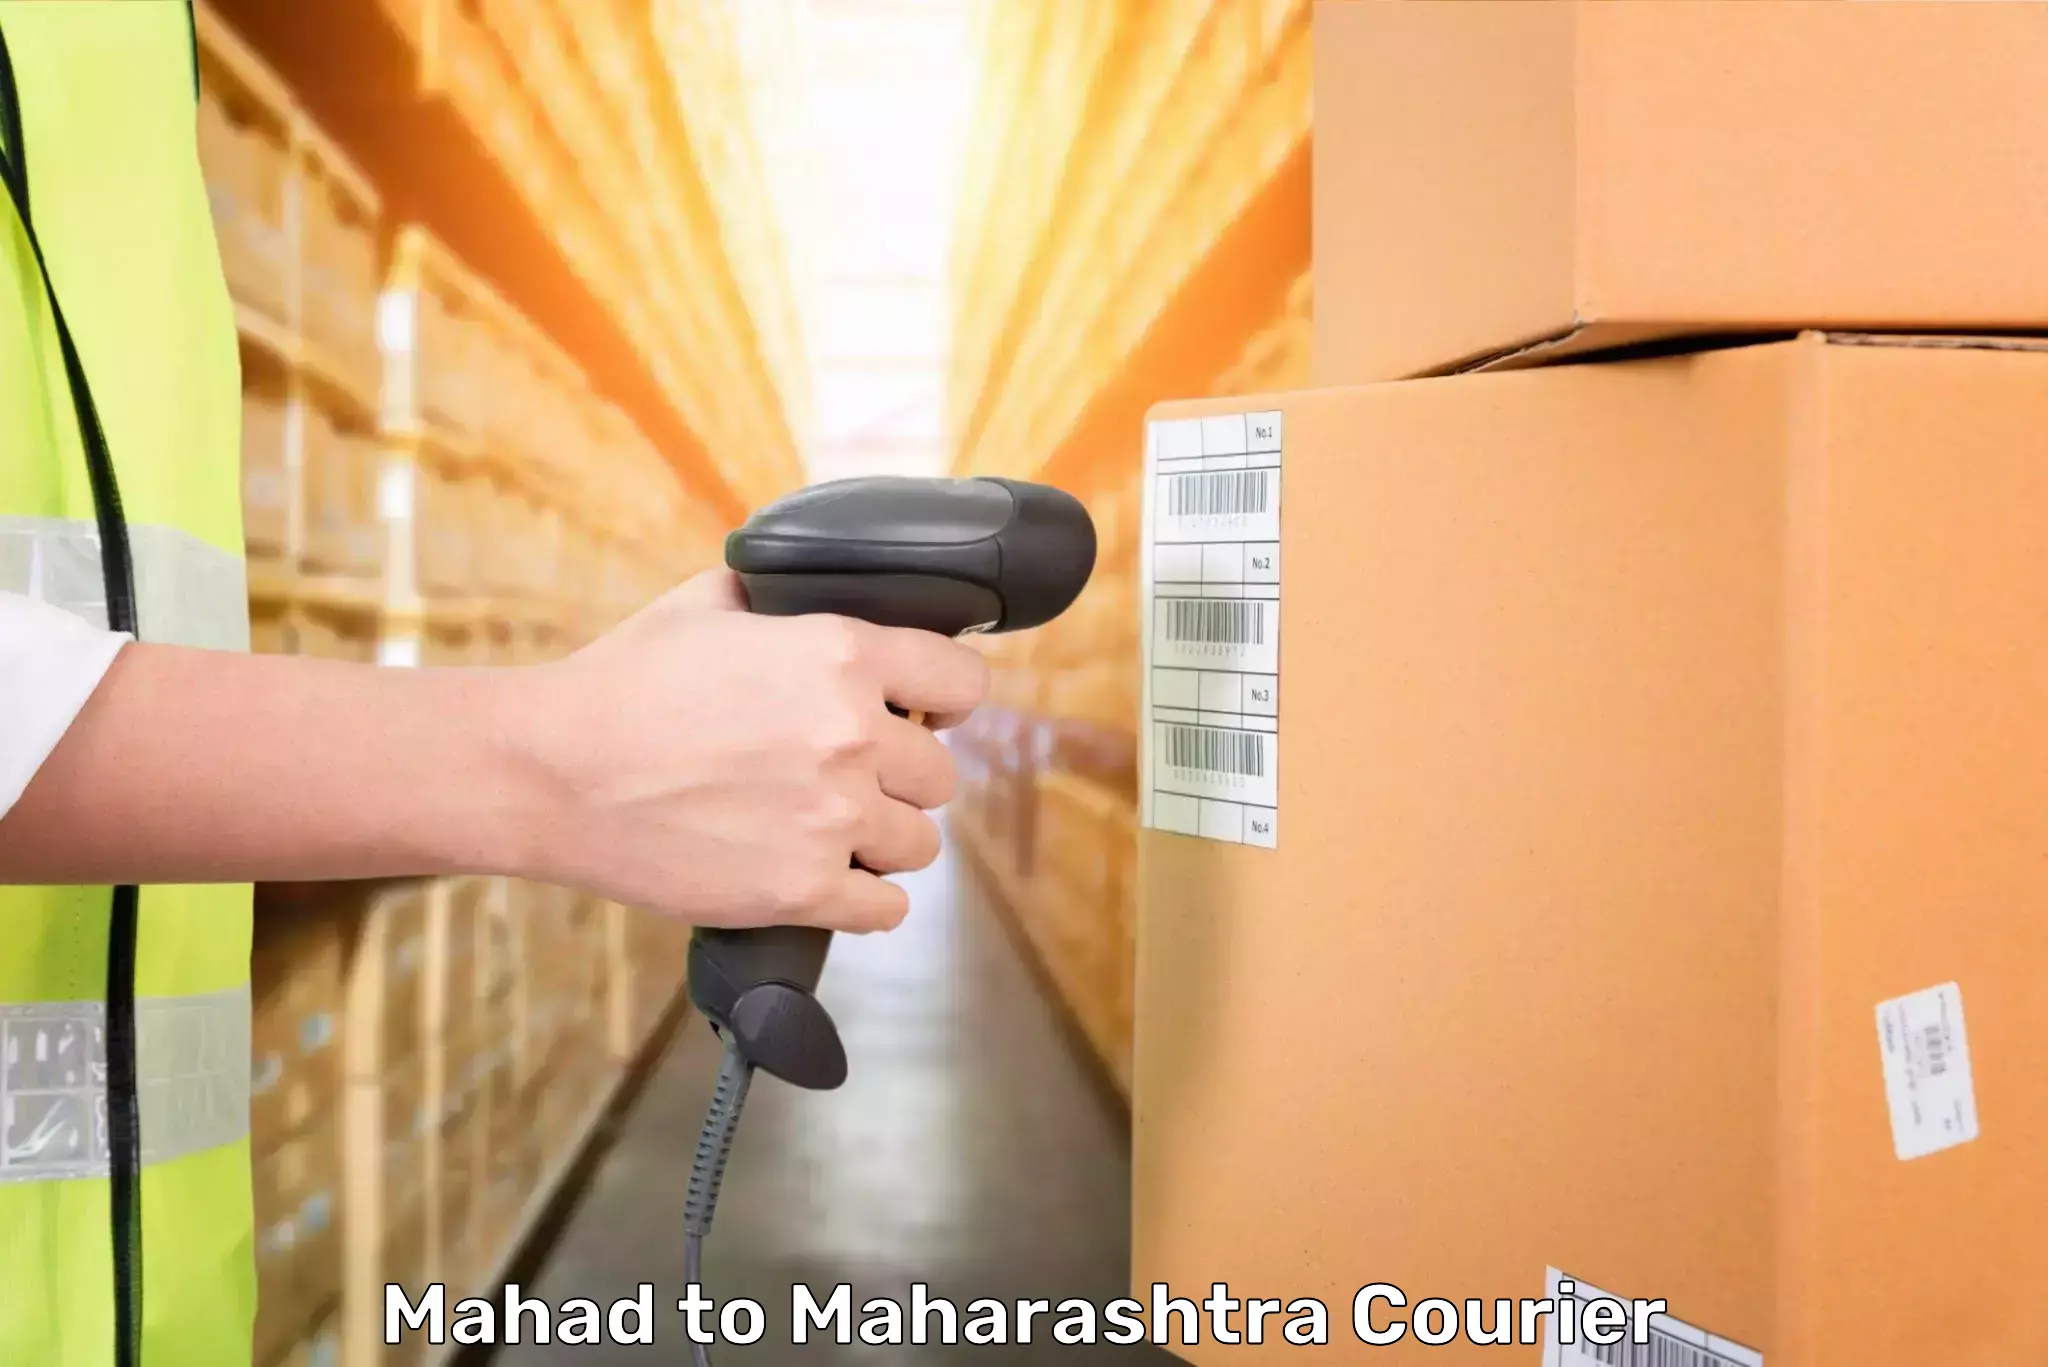 Baggage transport technology Mahad to Maharashtra